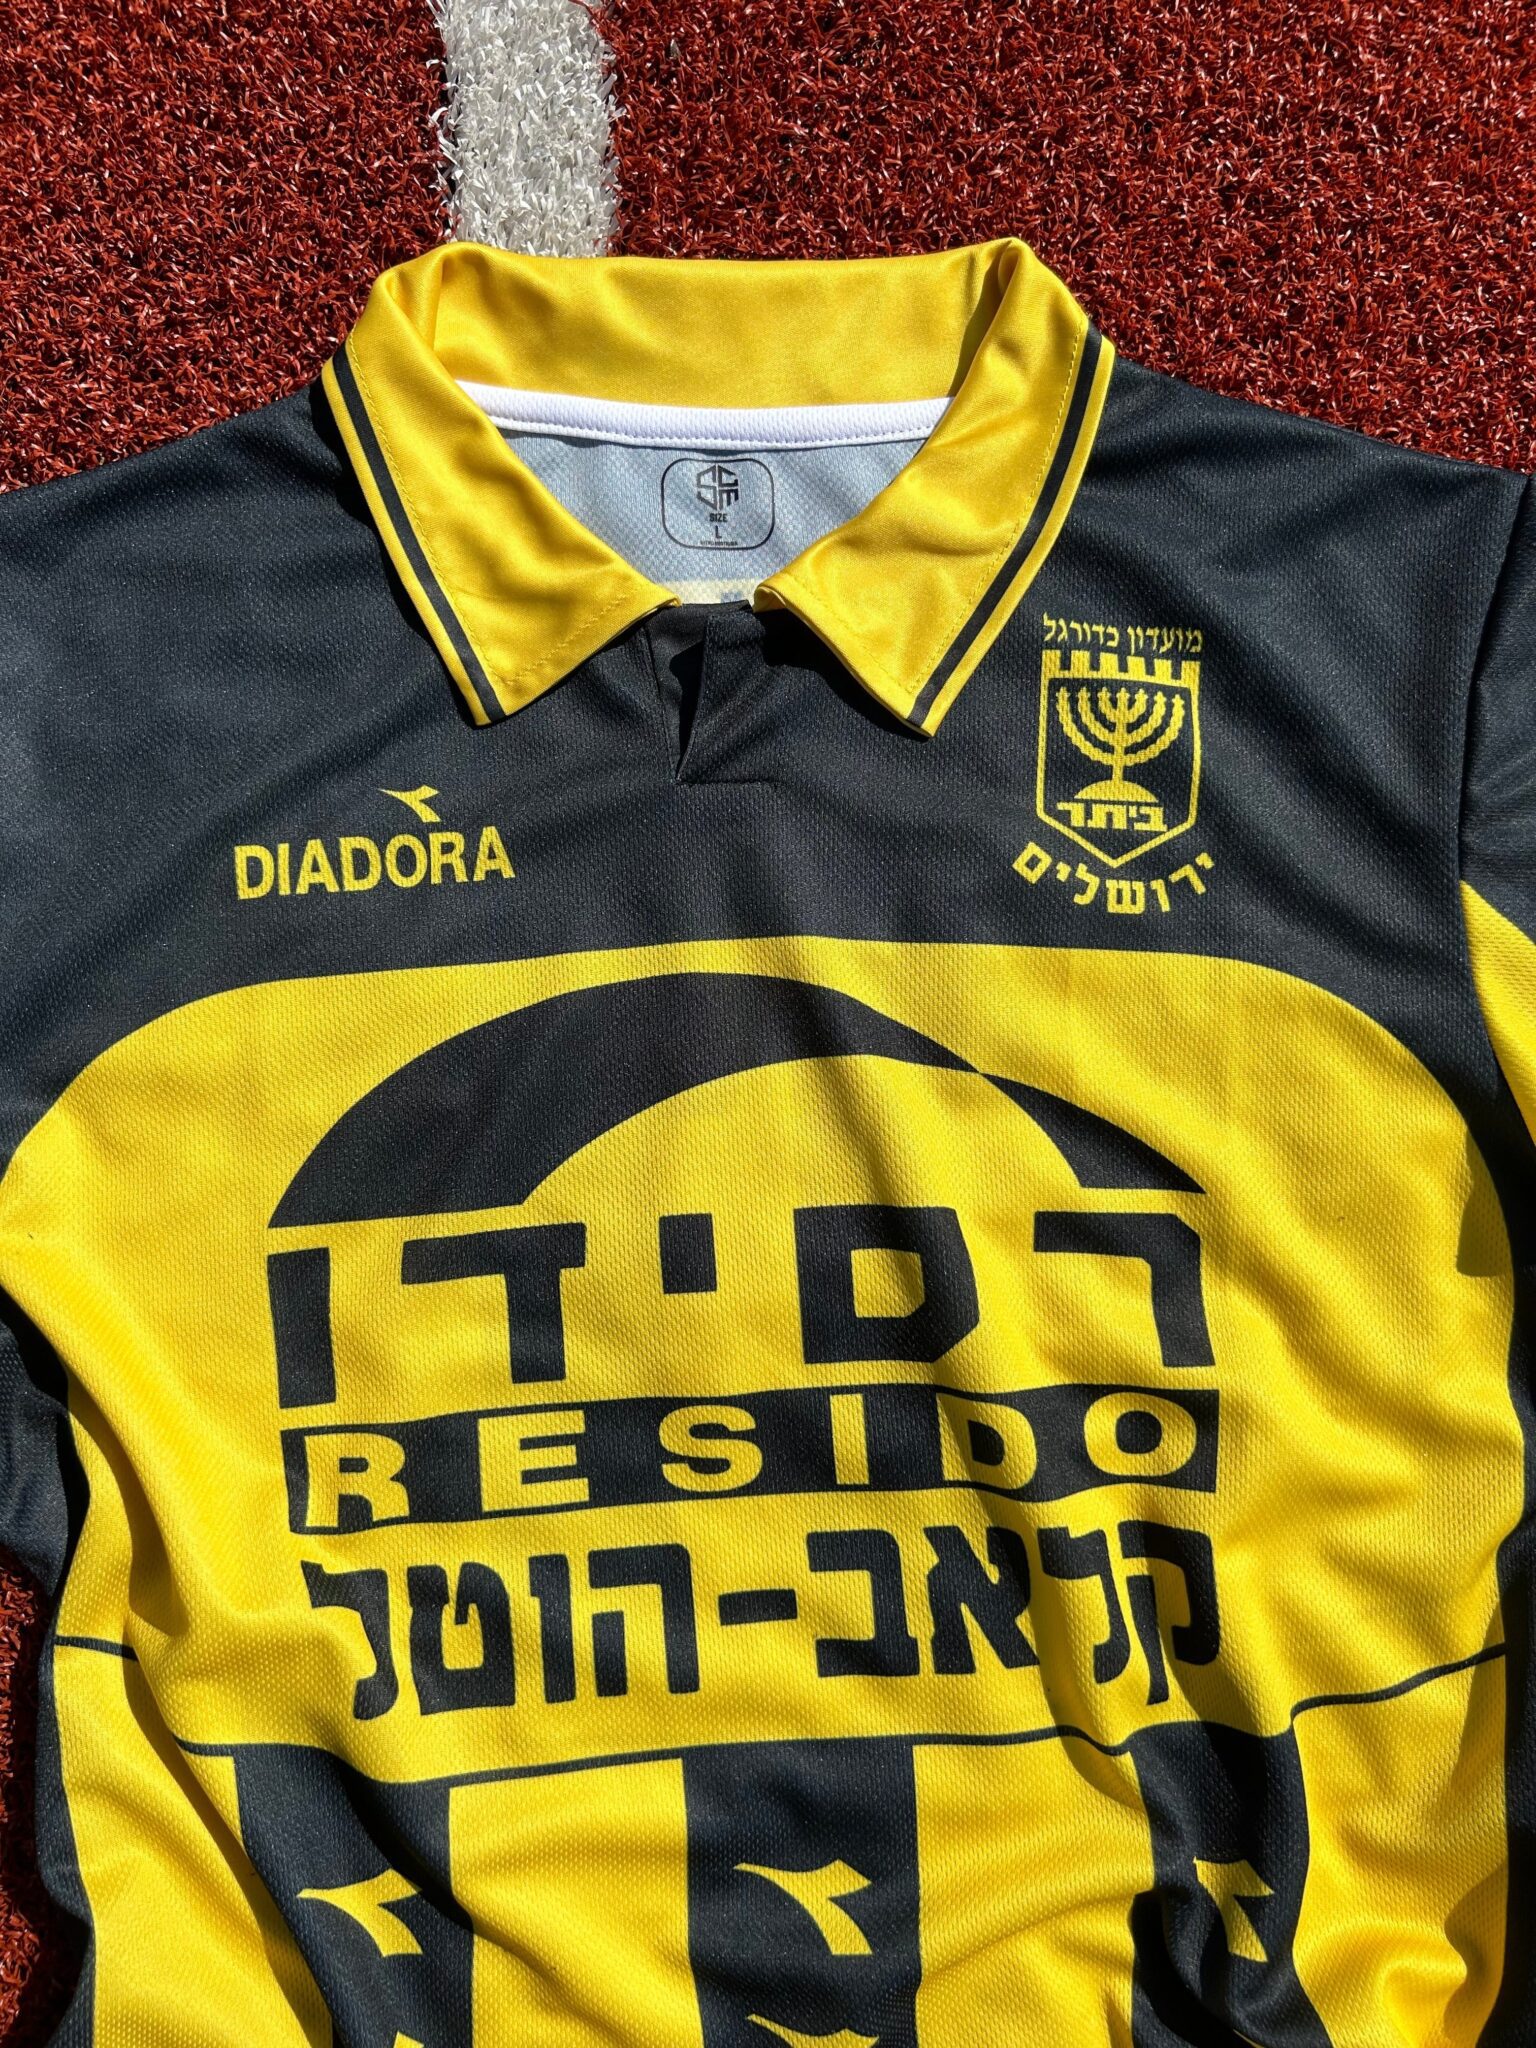 Beitar Jerusalem Football Shirt 1996/1997 Israel Retro Jersey Vintage Eli Ohana #11 ביתר ירושלים - Sport Club Memories